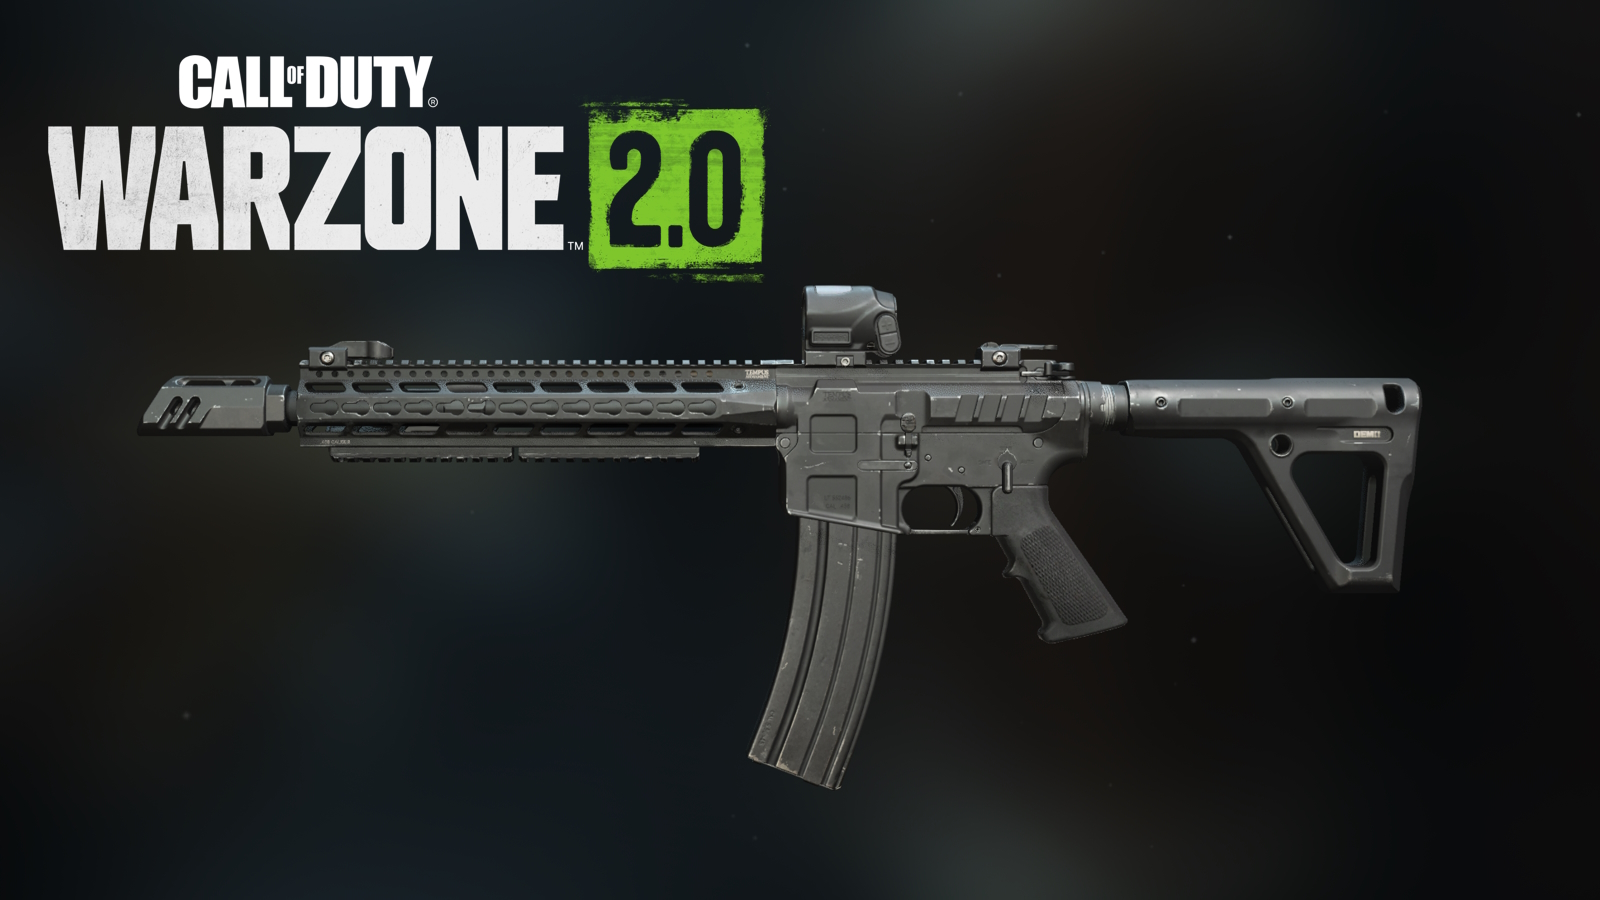 FTAC Recon met de beste uitlast met Call of Duty Warzone 2 -logo hierboven